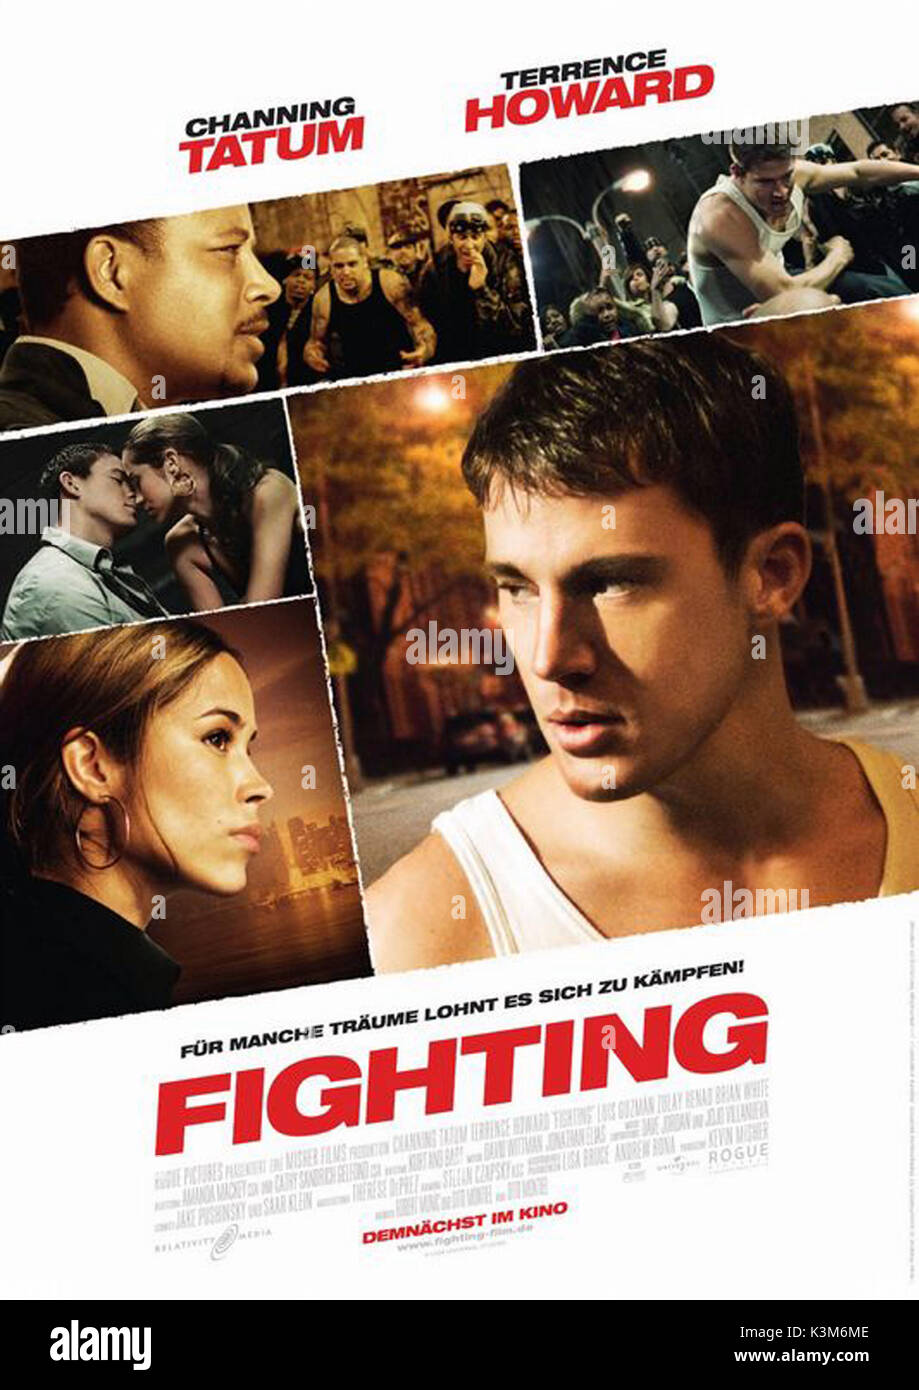 FIGHTING CHANNING TATUM FIGHTING     Date: 2009 Stock Photo